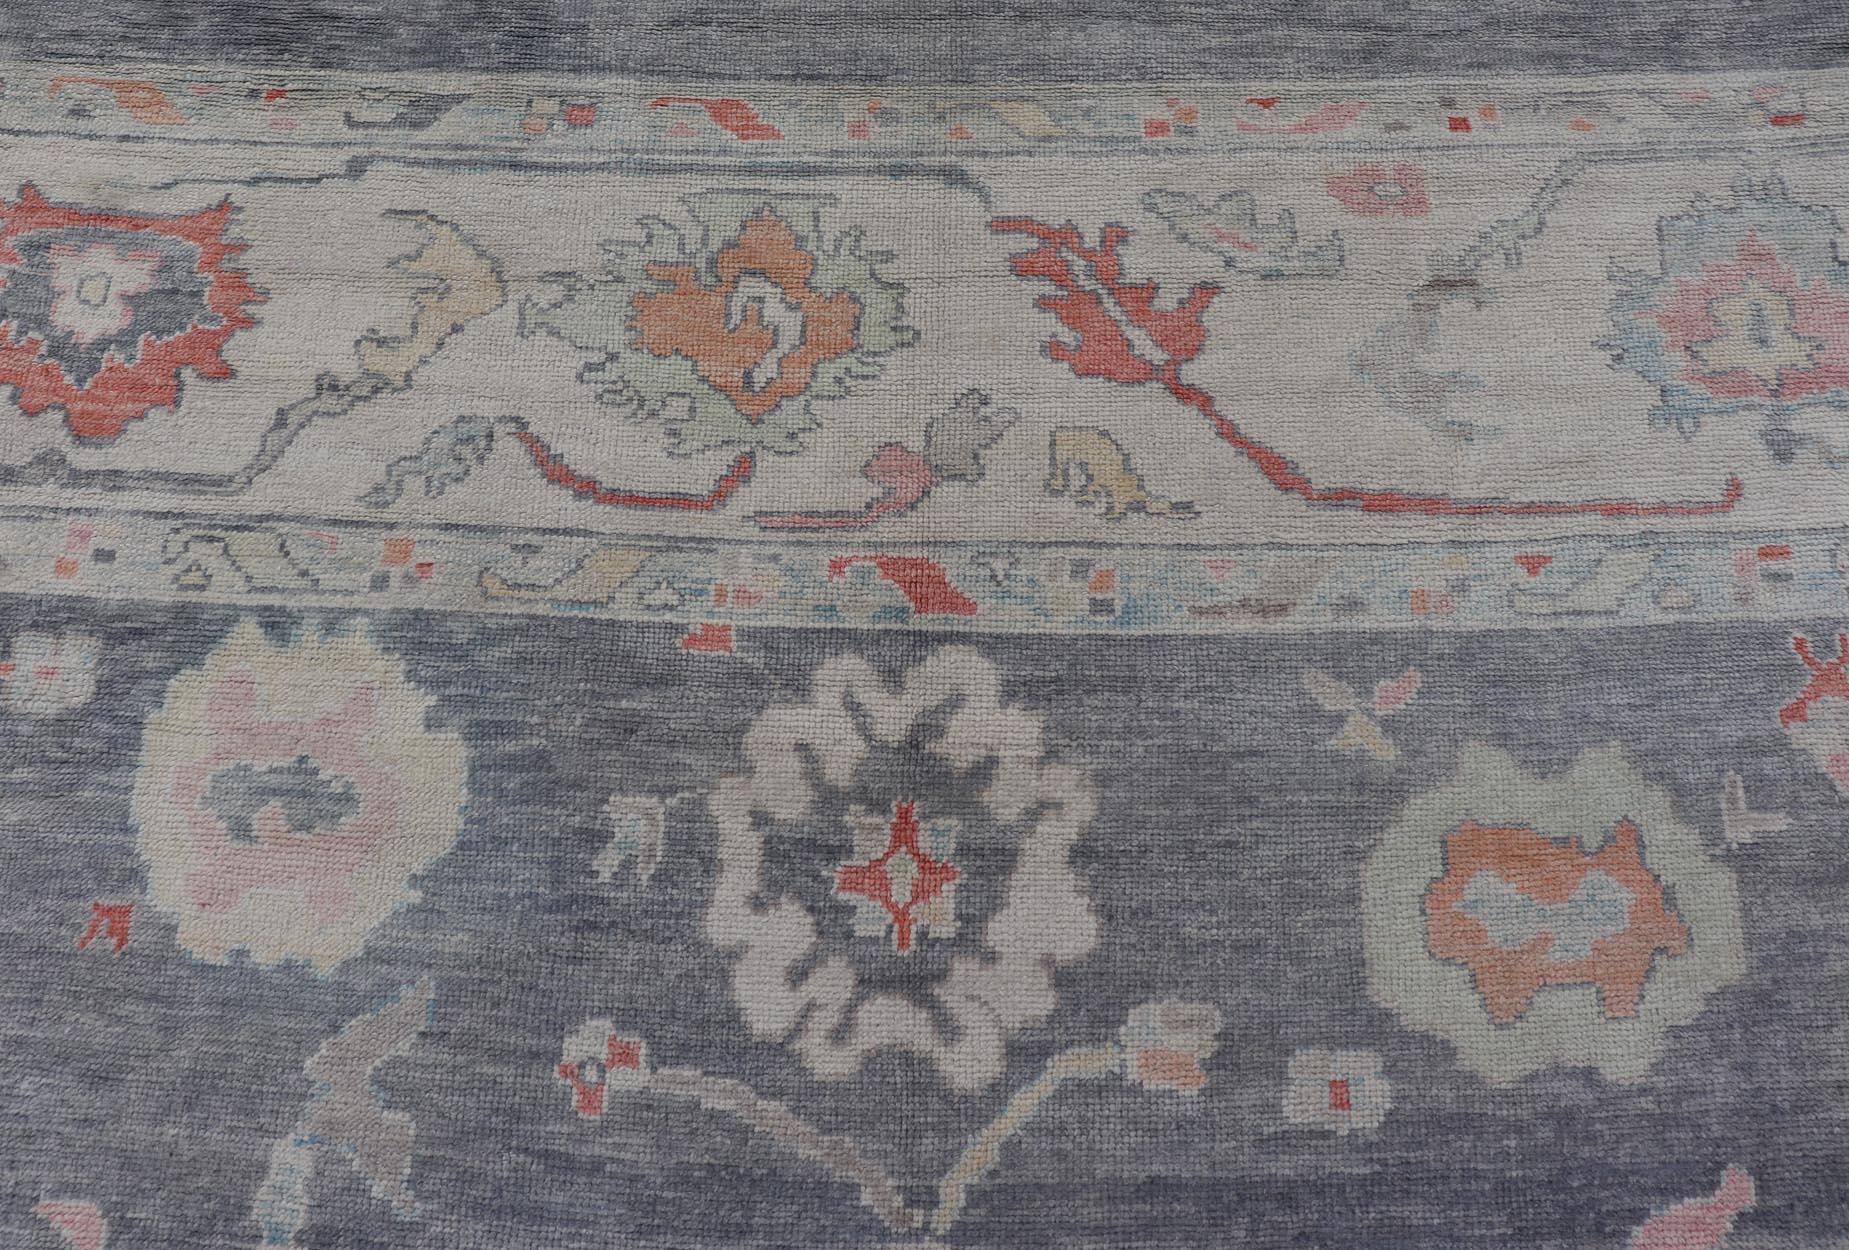 Mesures : 14'5 x 18'0 
Grand tapis turc moderne Oushak dans les tons gris et neutres avec un design all-over. Keivan Woven Arts / tapis EN-15205, pays d'origine / type : Turquie / Oushak

Ce tapis traditionnel Oushak de Turquie présente une palette